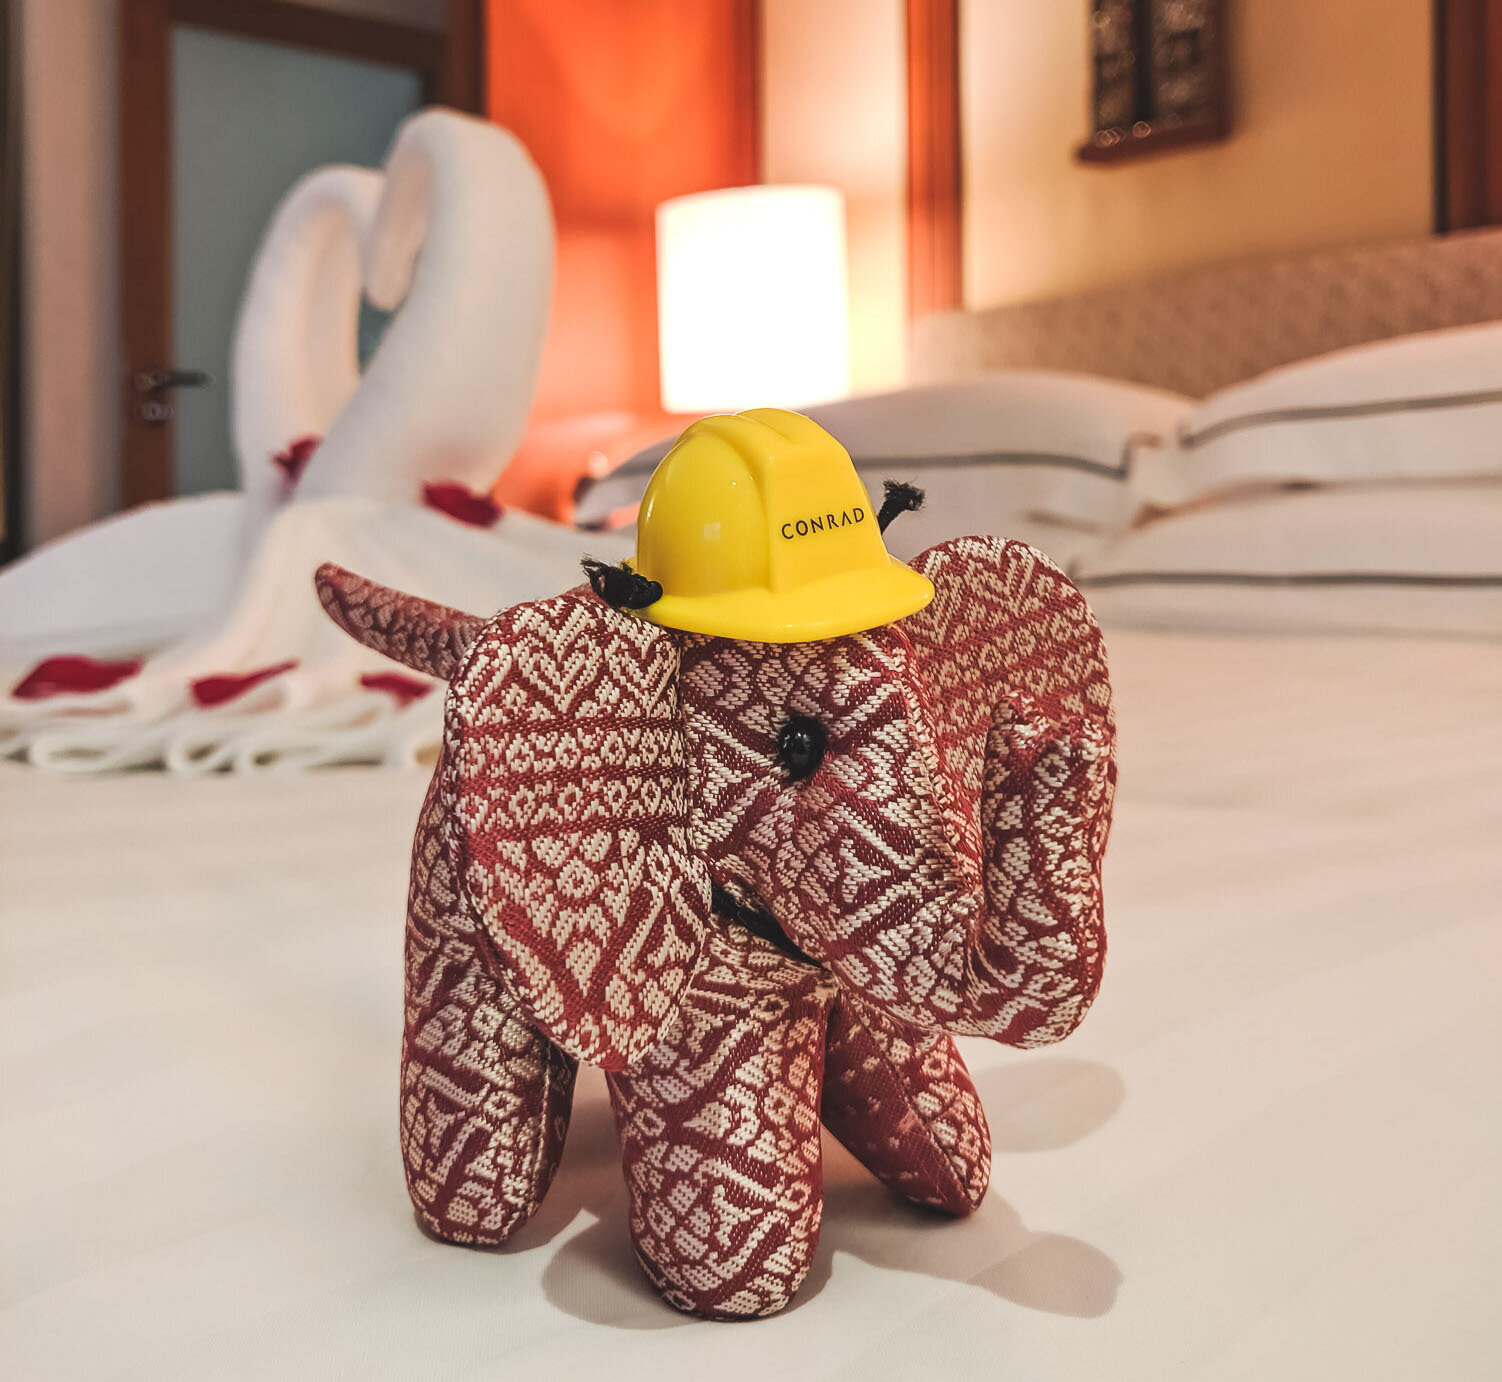 Conrad Bangkok elephant